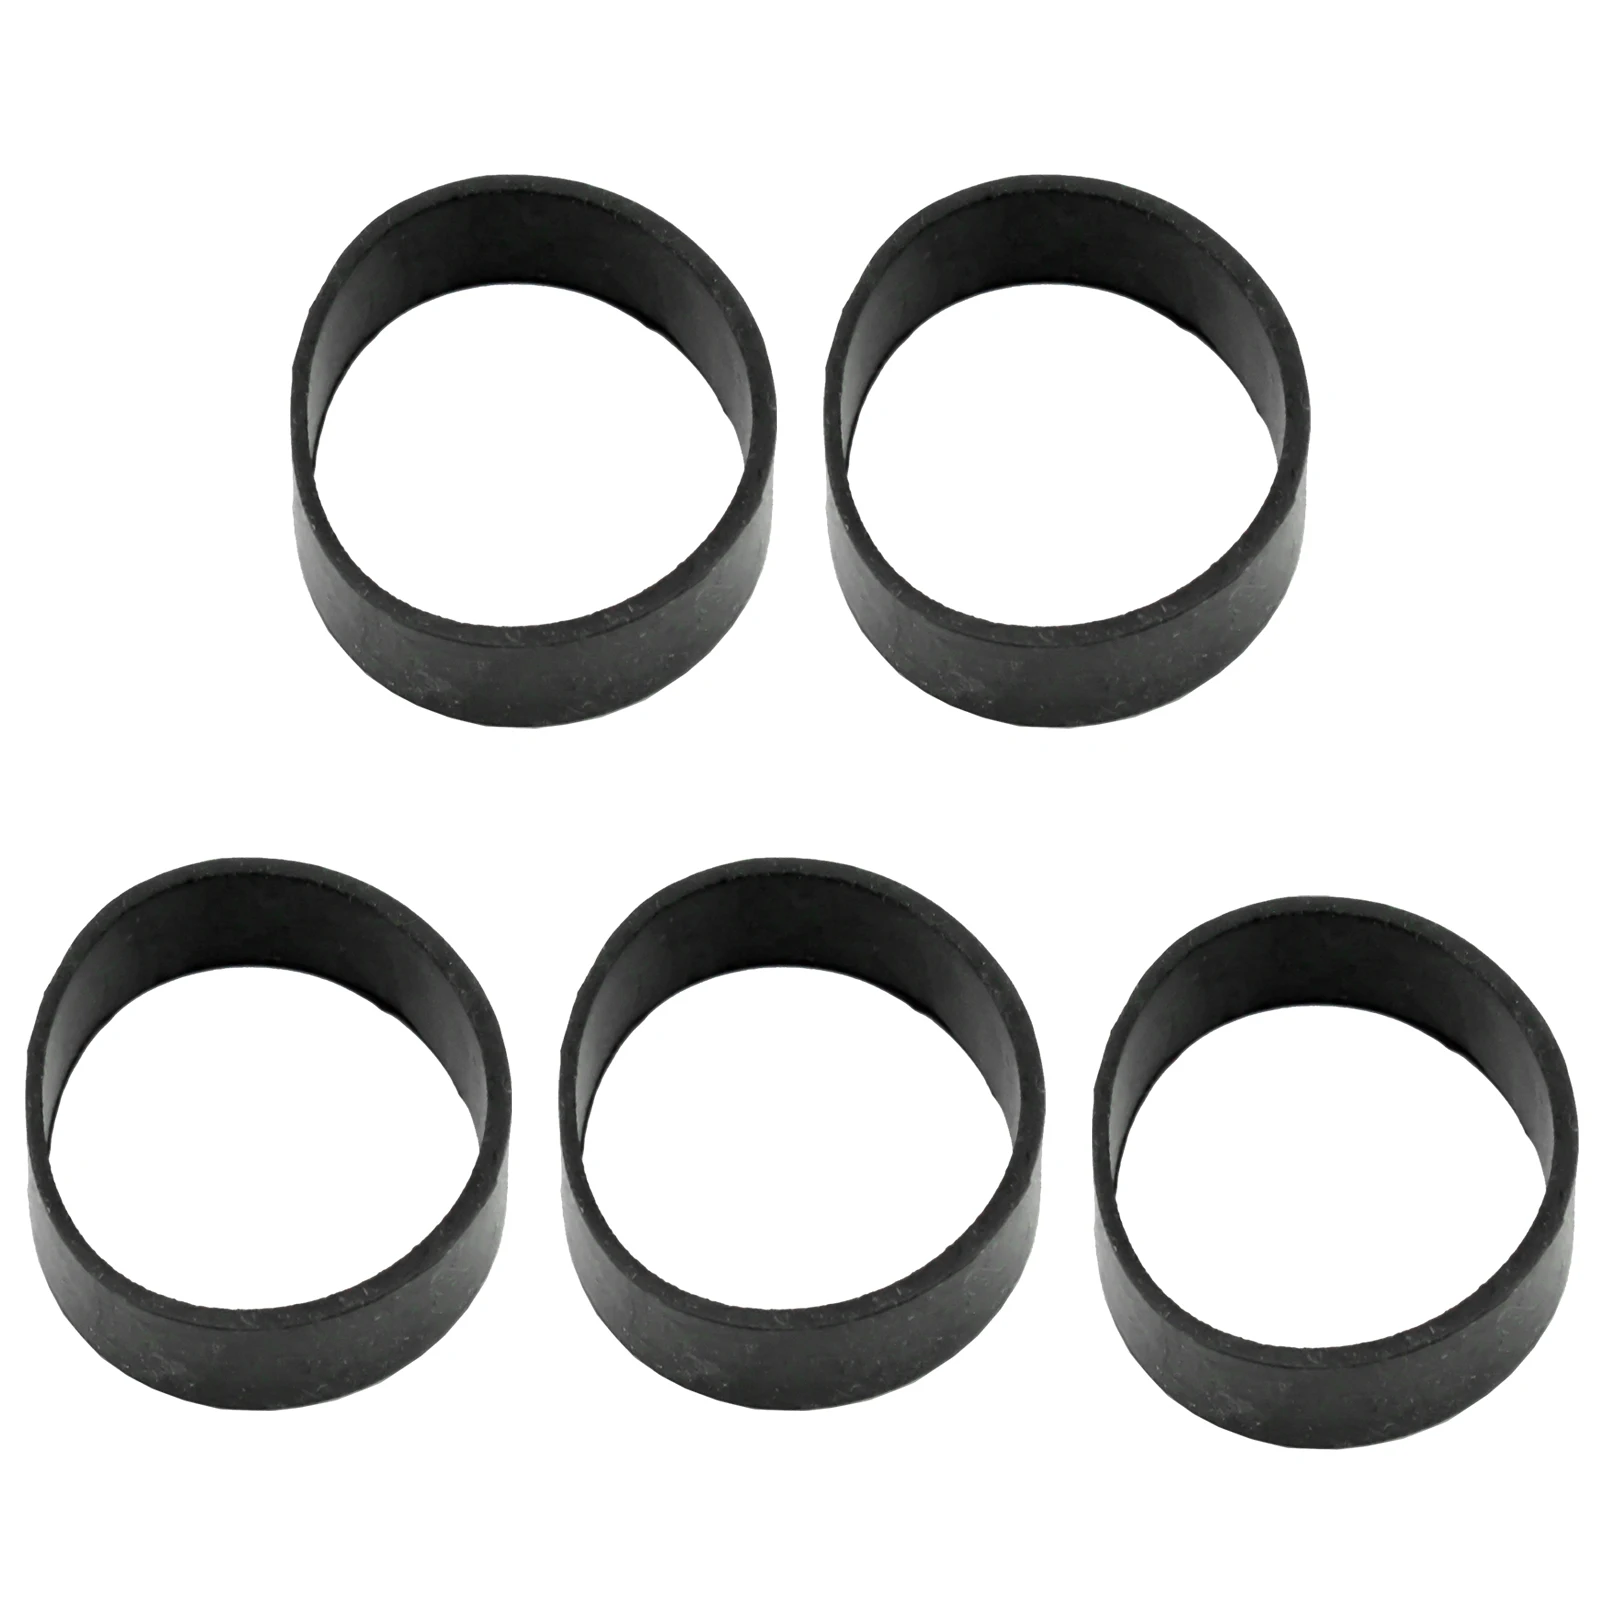 

Кольцо для дайвинга 5 шт. черных фиксированных резиновых колец внутренний диаметр 32 мм обеспечивают надежную ленту совершенно новые